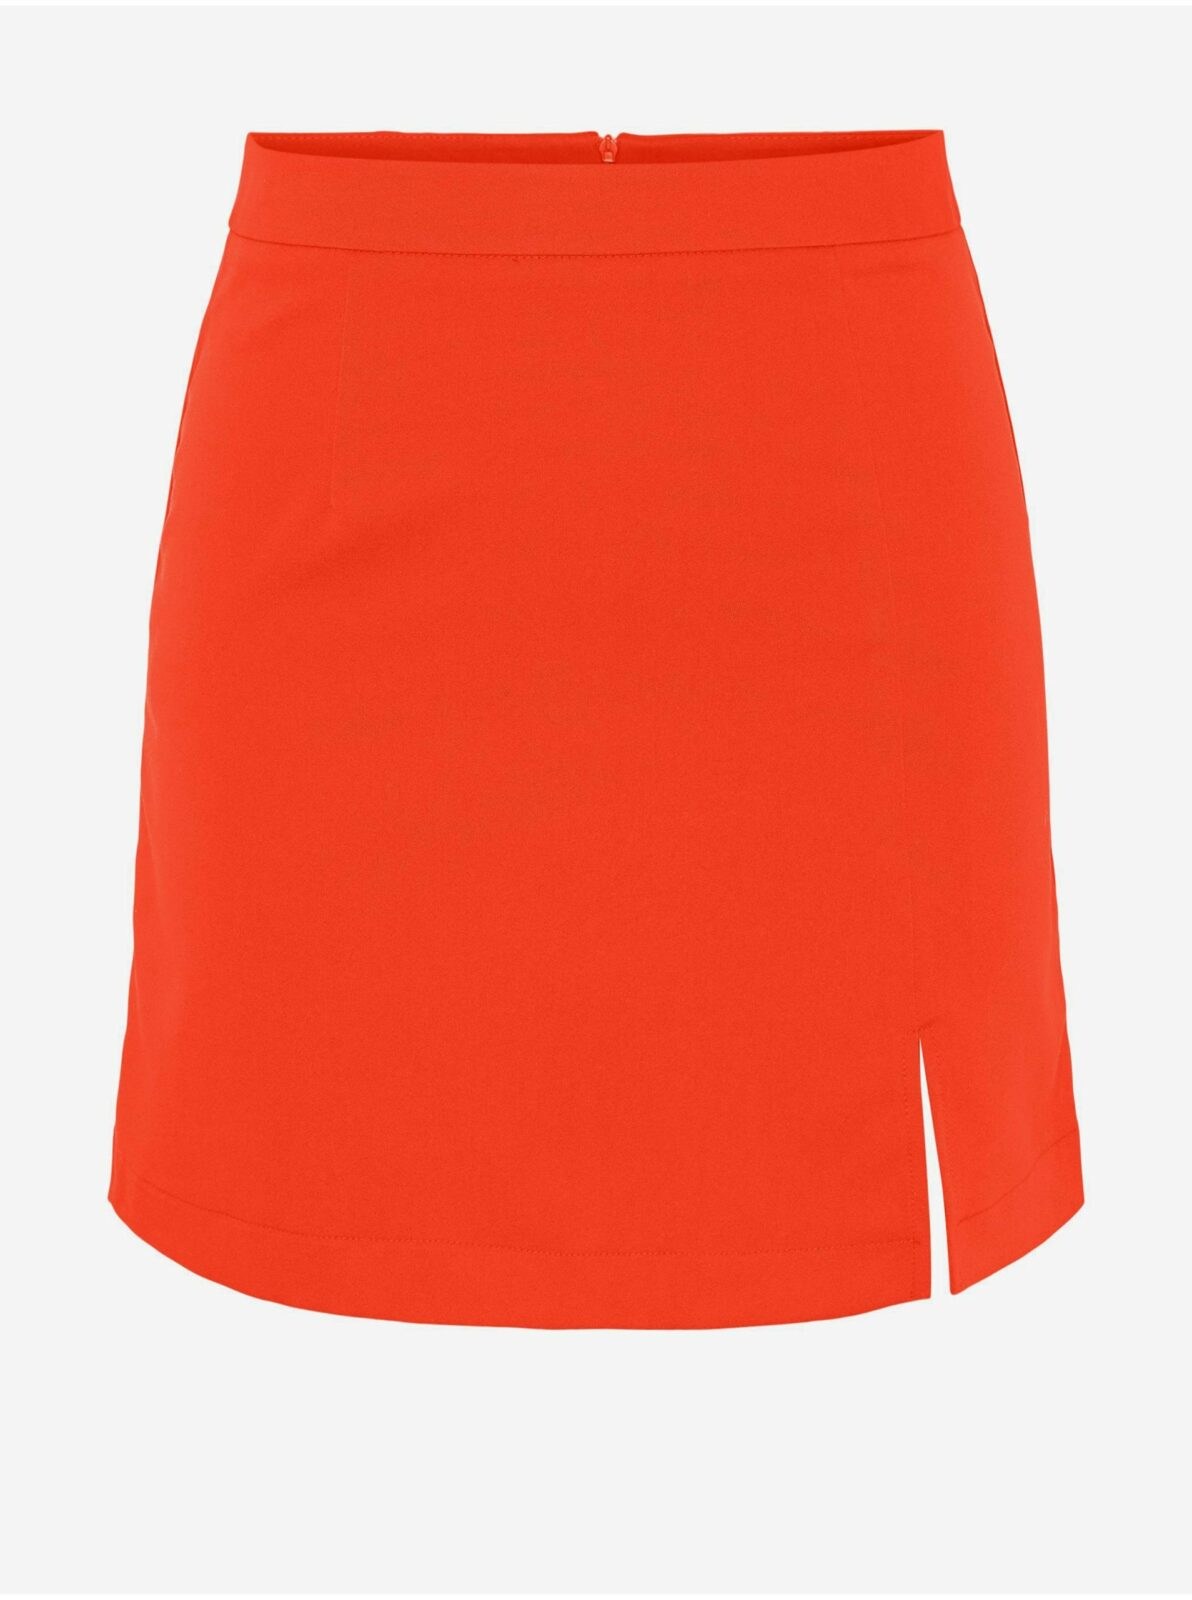 Oranžová dámská mini sukně s rozparkem